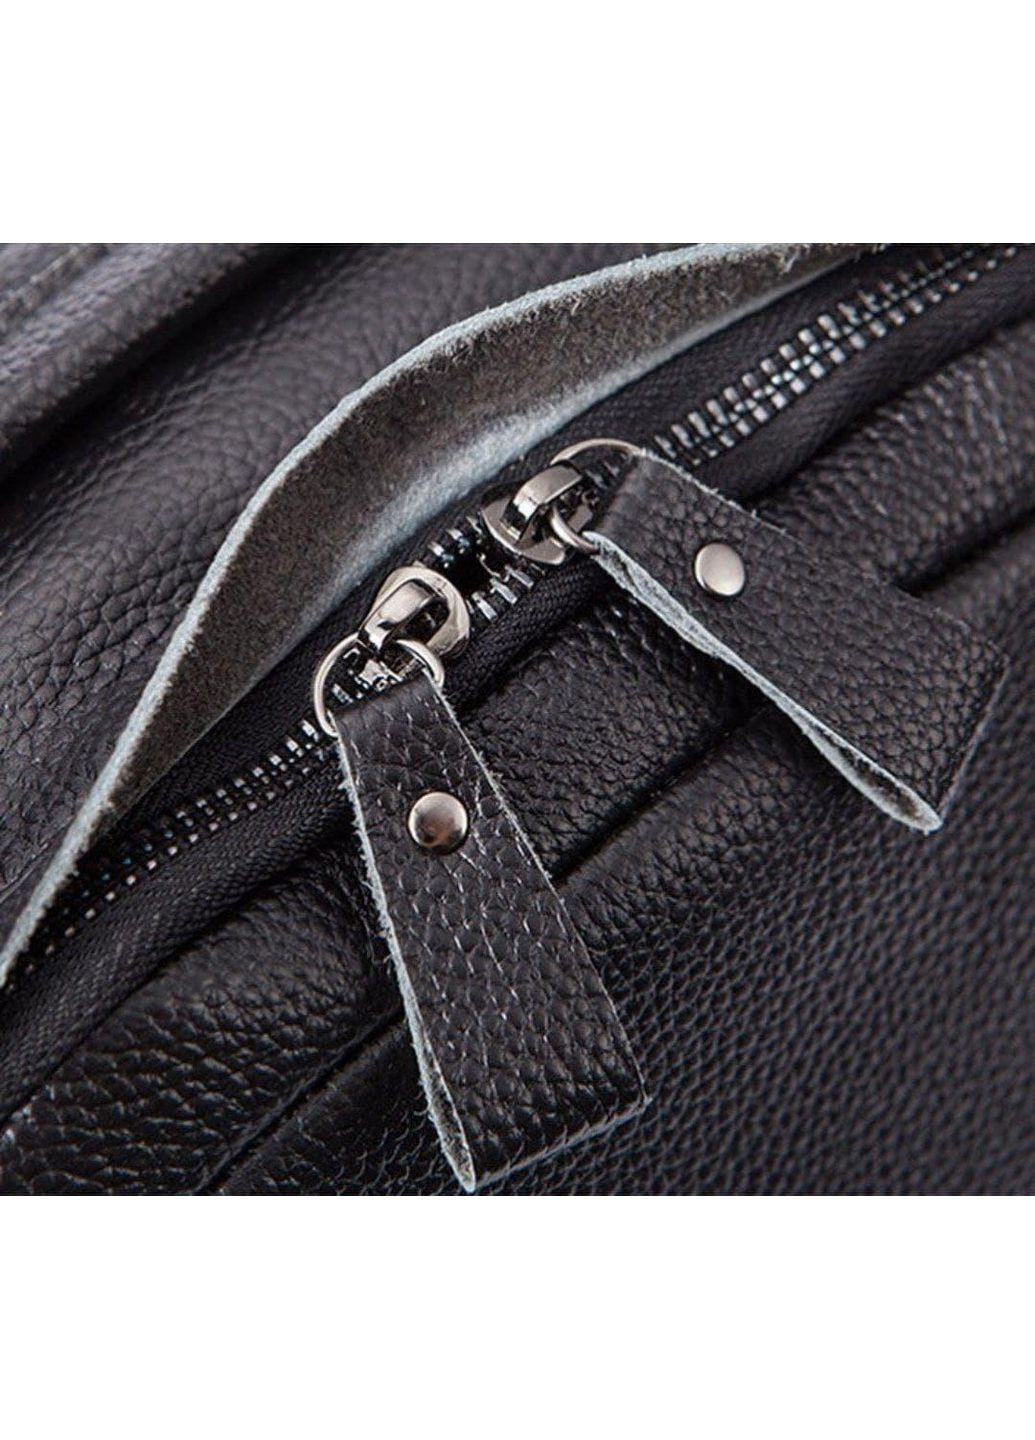 Кожаный мужской рюкзак Tiding Bag (289200840)